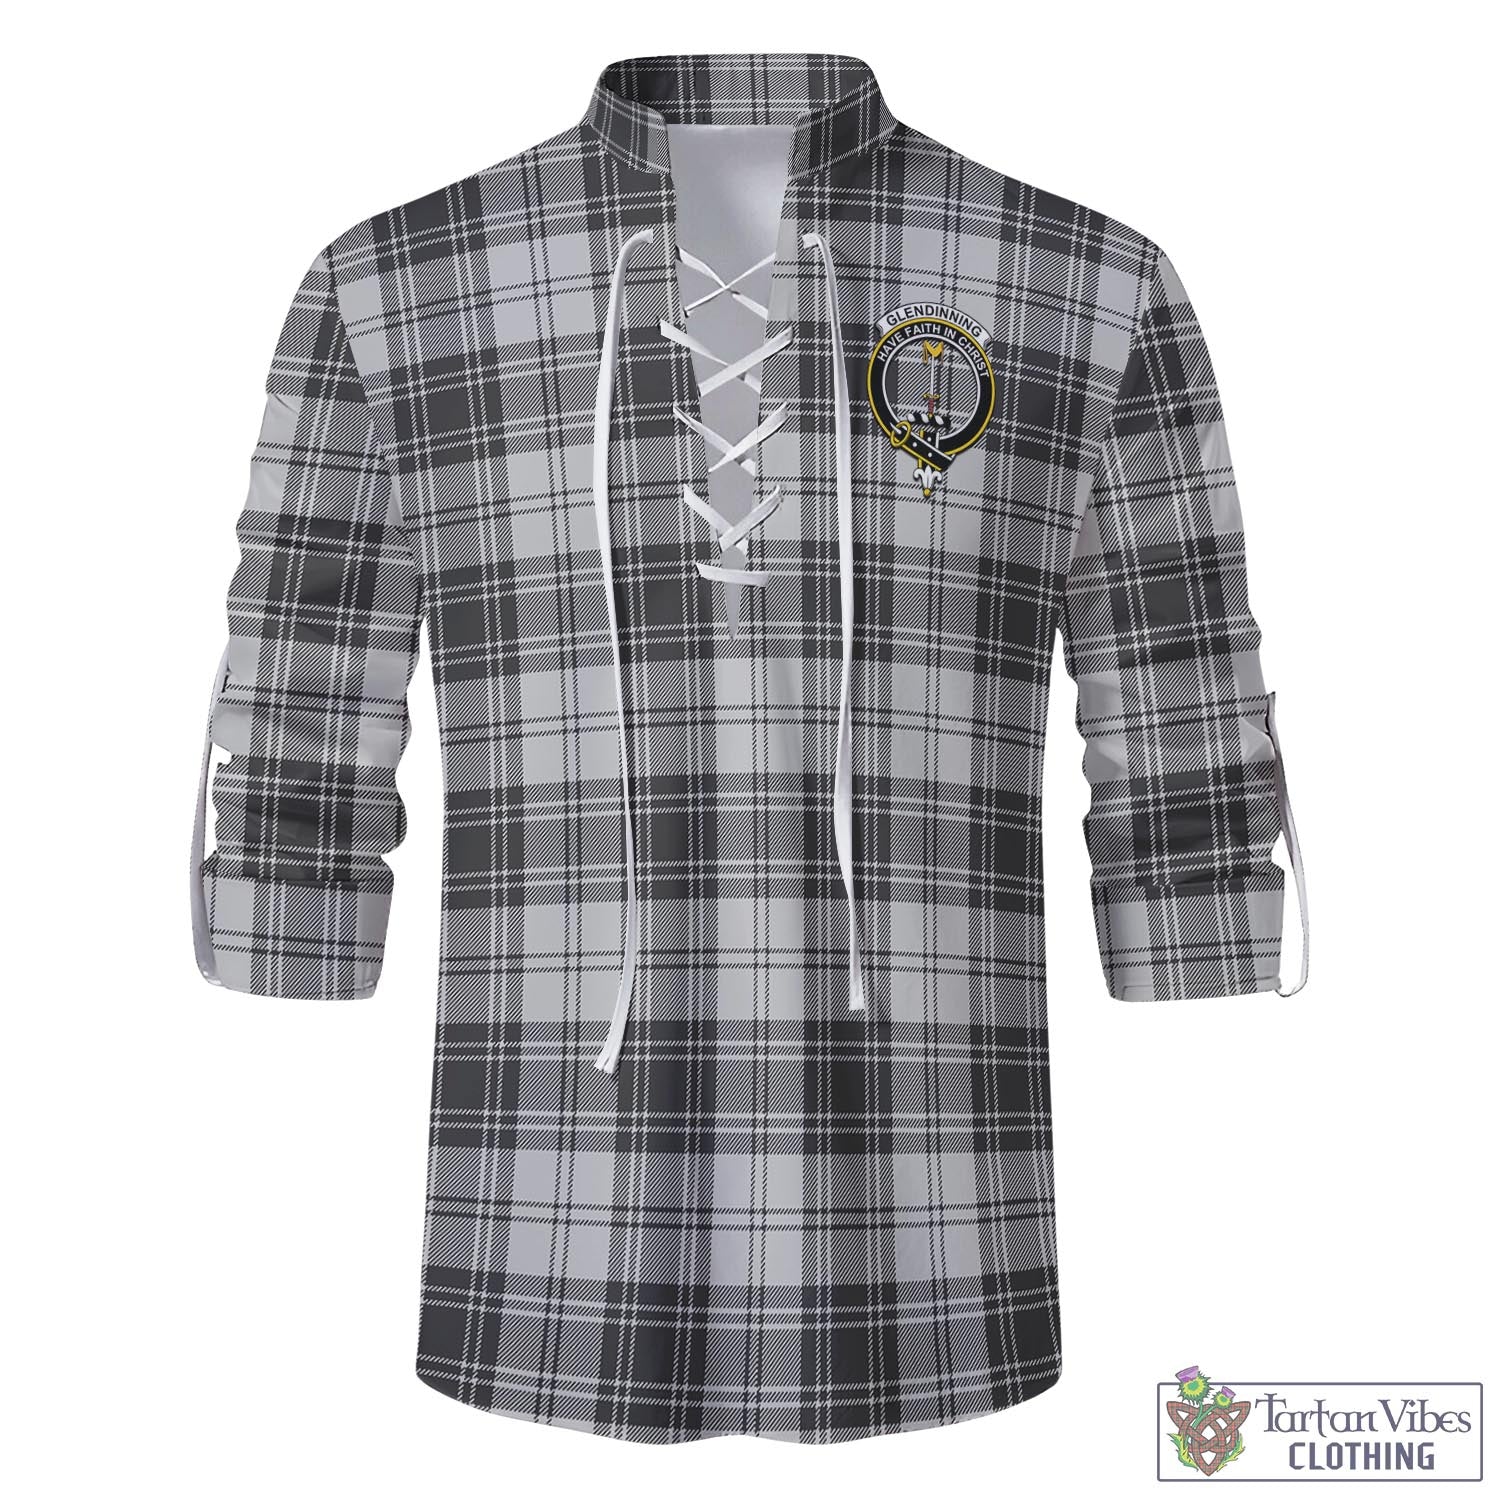 Tartan Vibes Clothing Glendinning Tartan Men's Scottish Traditional Jacobite Ghillie Kilt Shirt with Family Crest